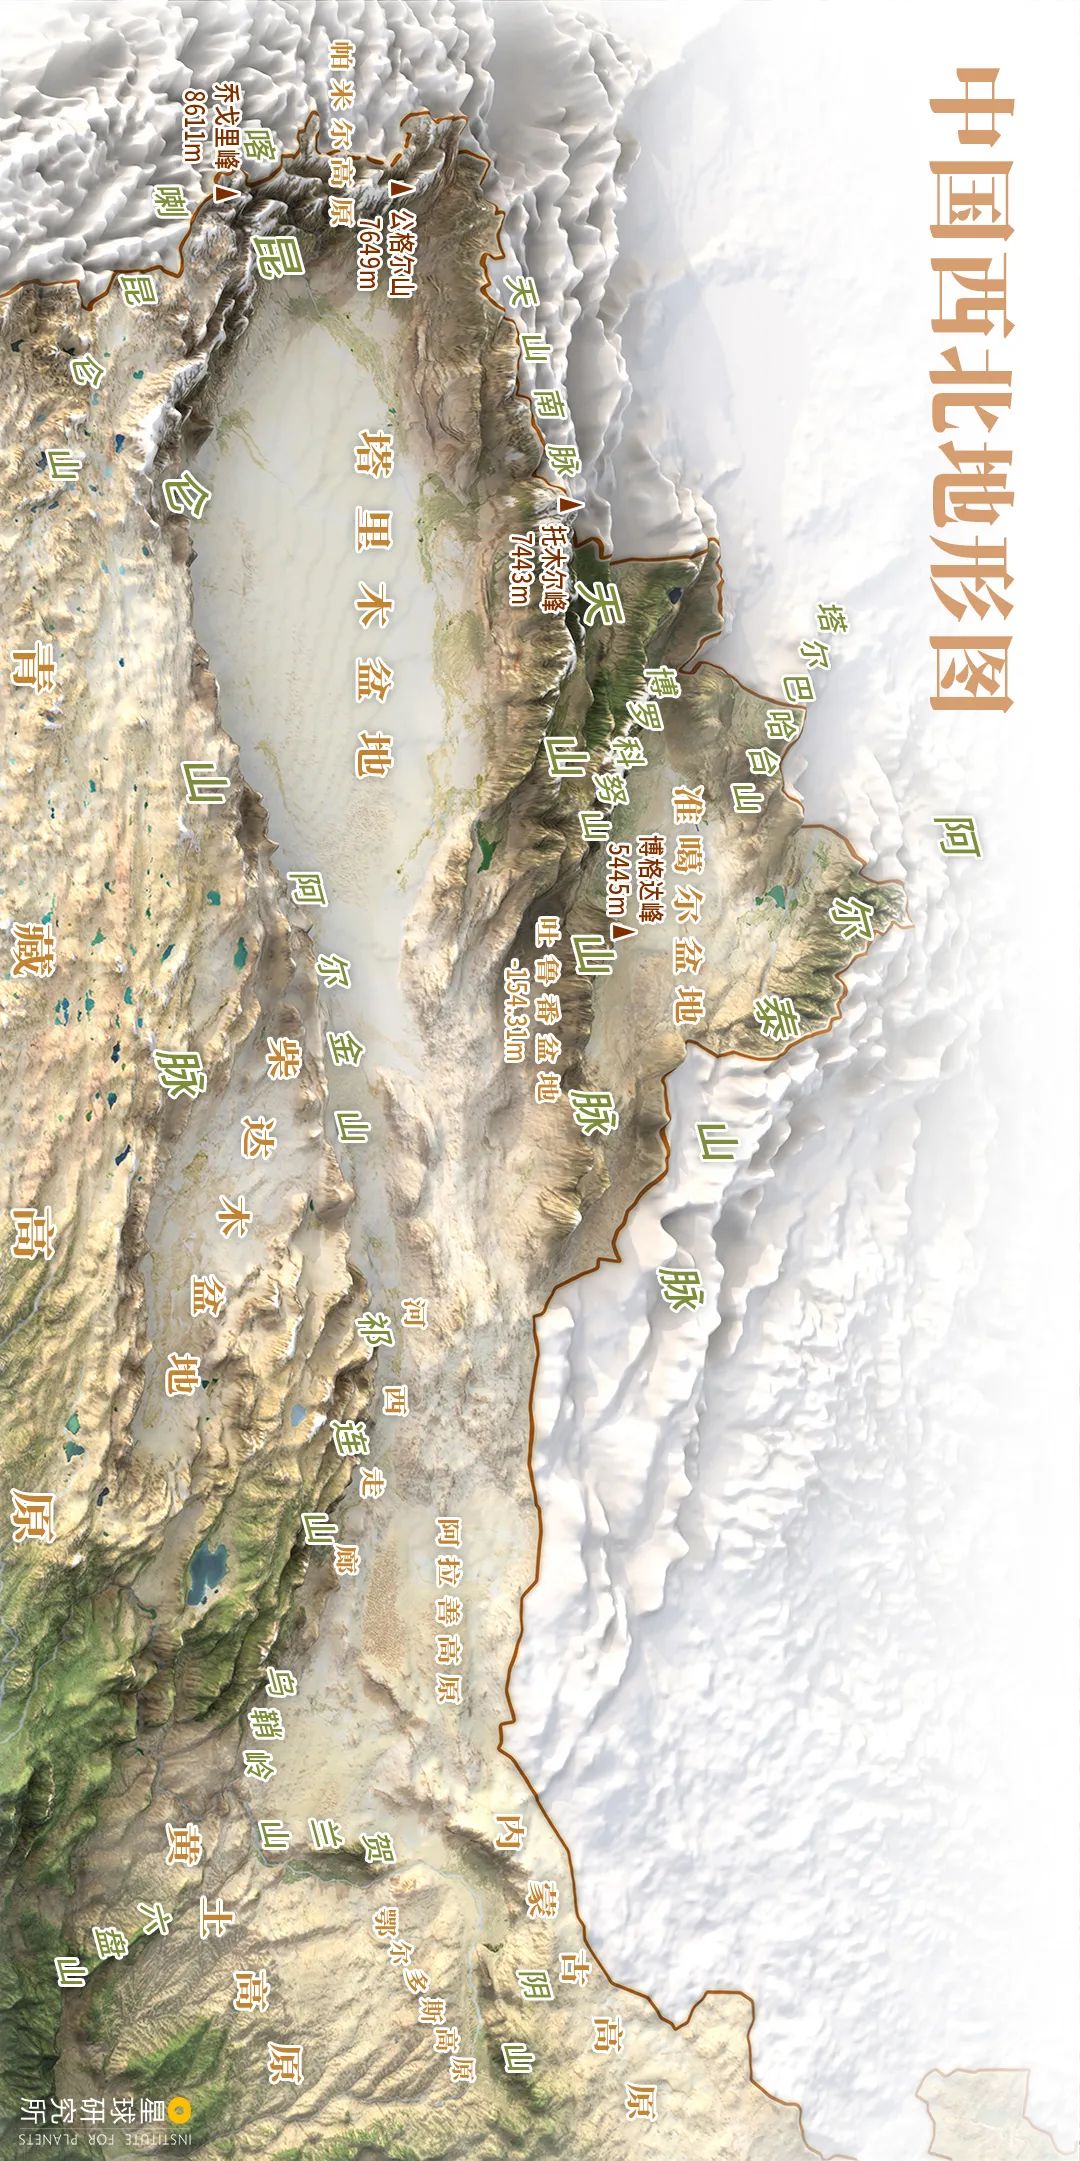 中国地图七大板块图图片